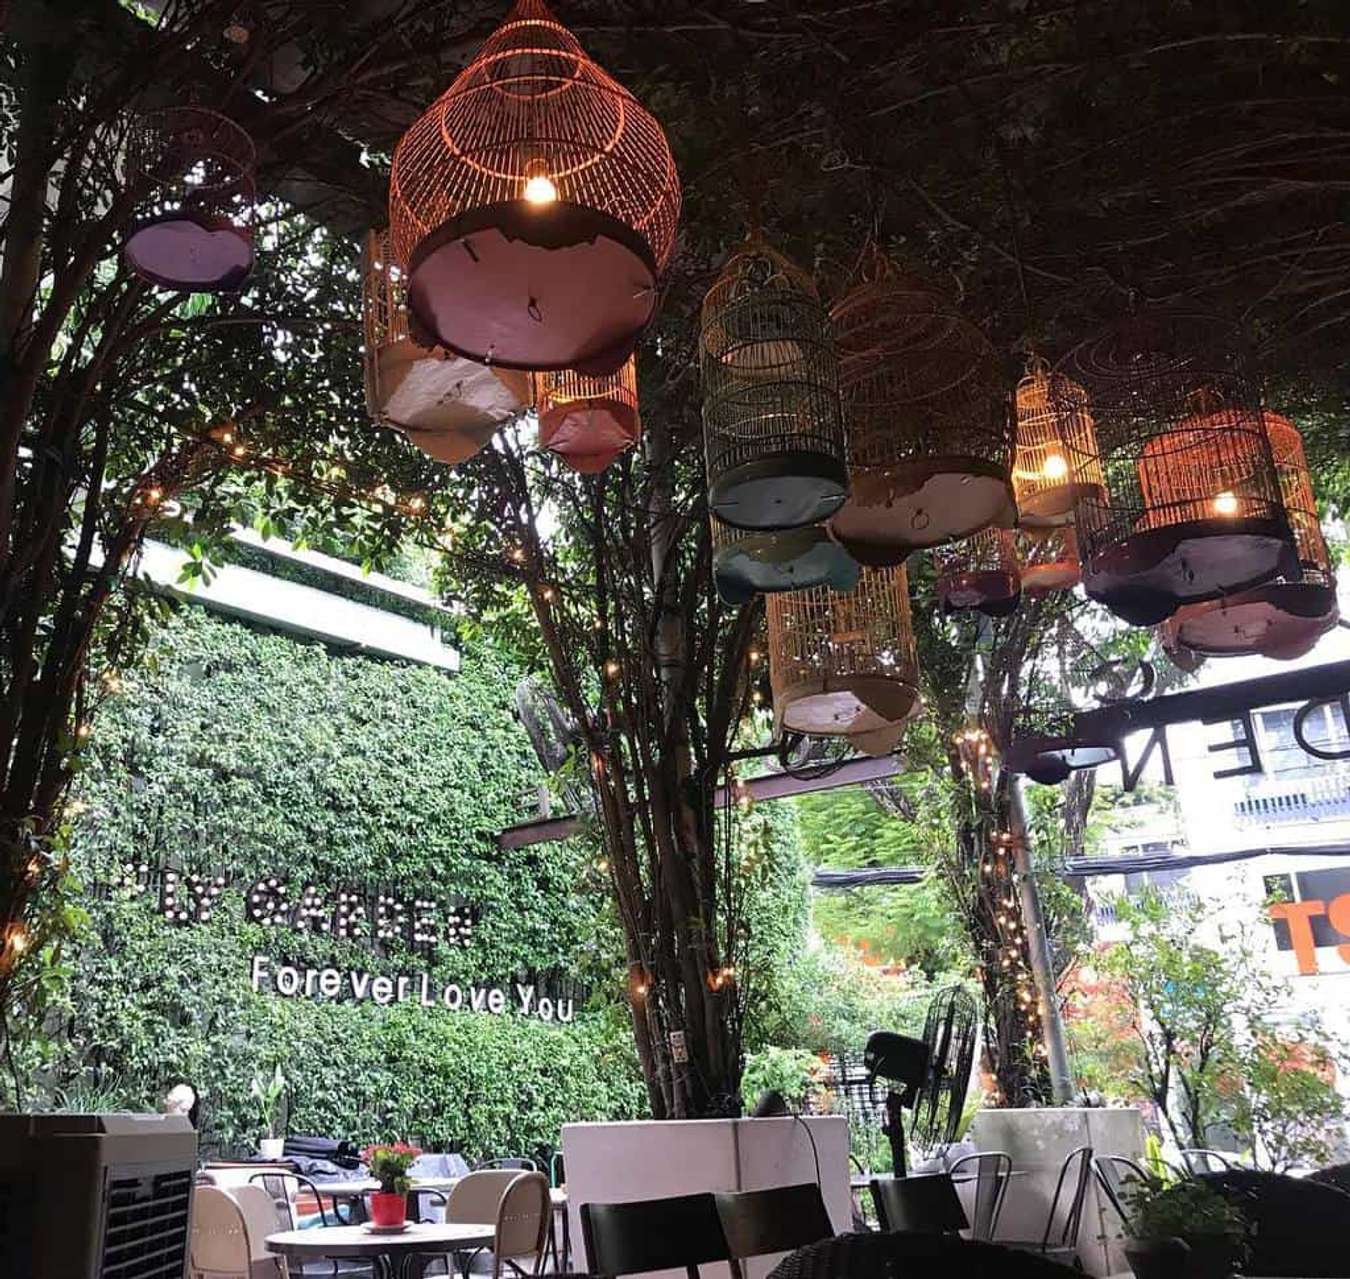 Cà phê sân vườn giữa Sài Gòn - Thưởng thức ly cà phê thơm ngon giữa Sài Gòn ồn ào, đến với quán cà phê sân vườn xanh mát như một chốn oan gia giữa trung tâm thành phố, để tận hưởng không khí trong lành và cảm nhận sự thanh bình trái ngược với cuộc sống náo nhiệt của phố thị.